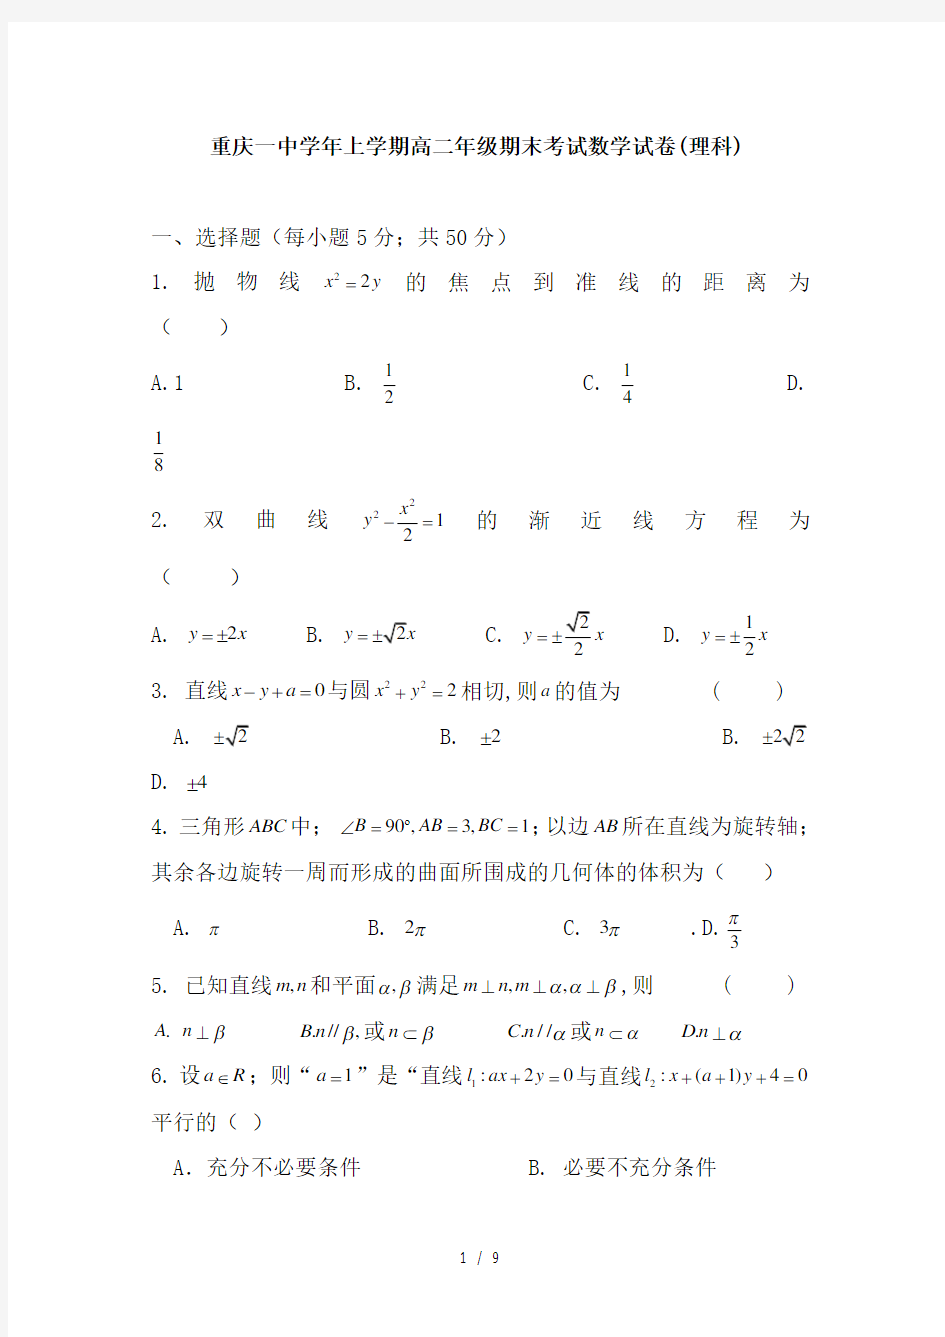 重庆一中学年上学期高二年级期末考试数学试卷(理科)